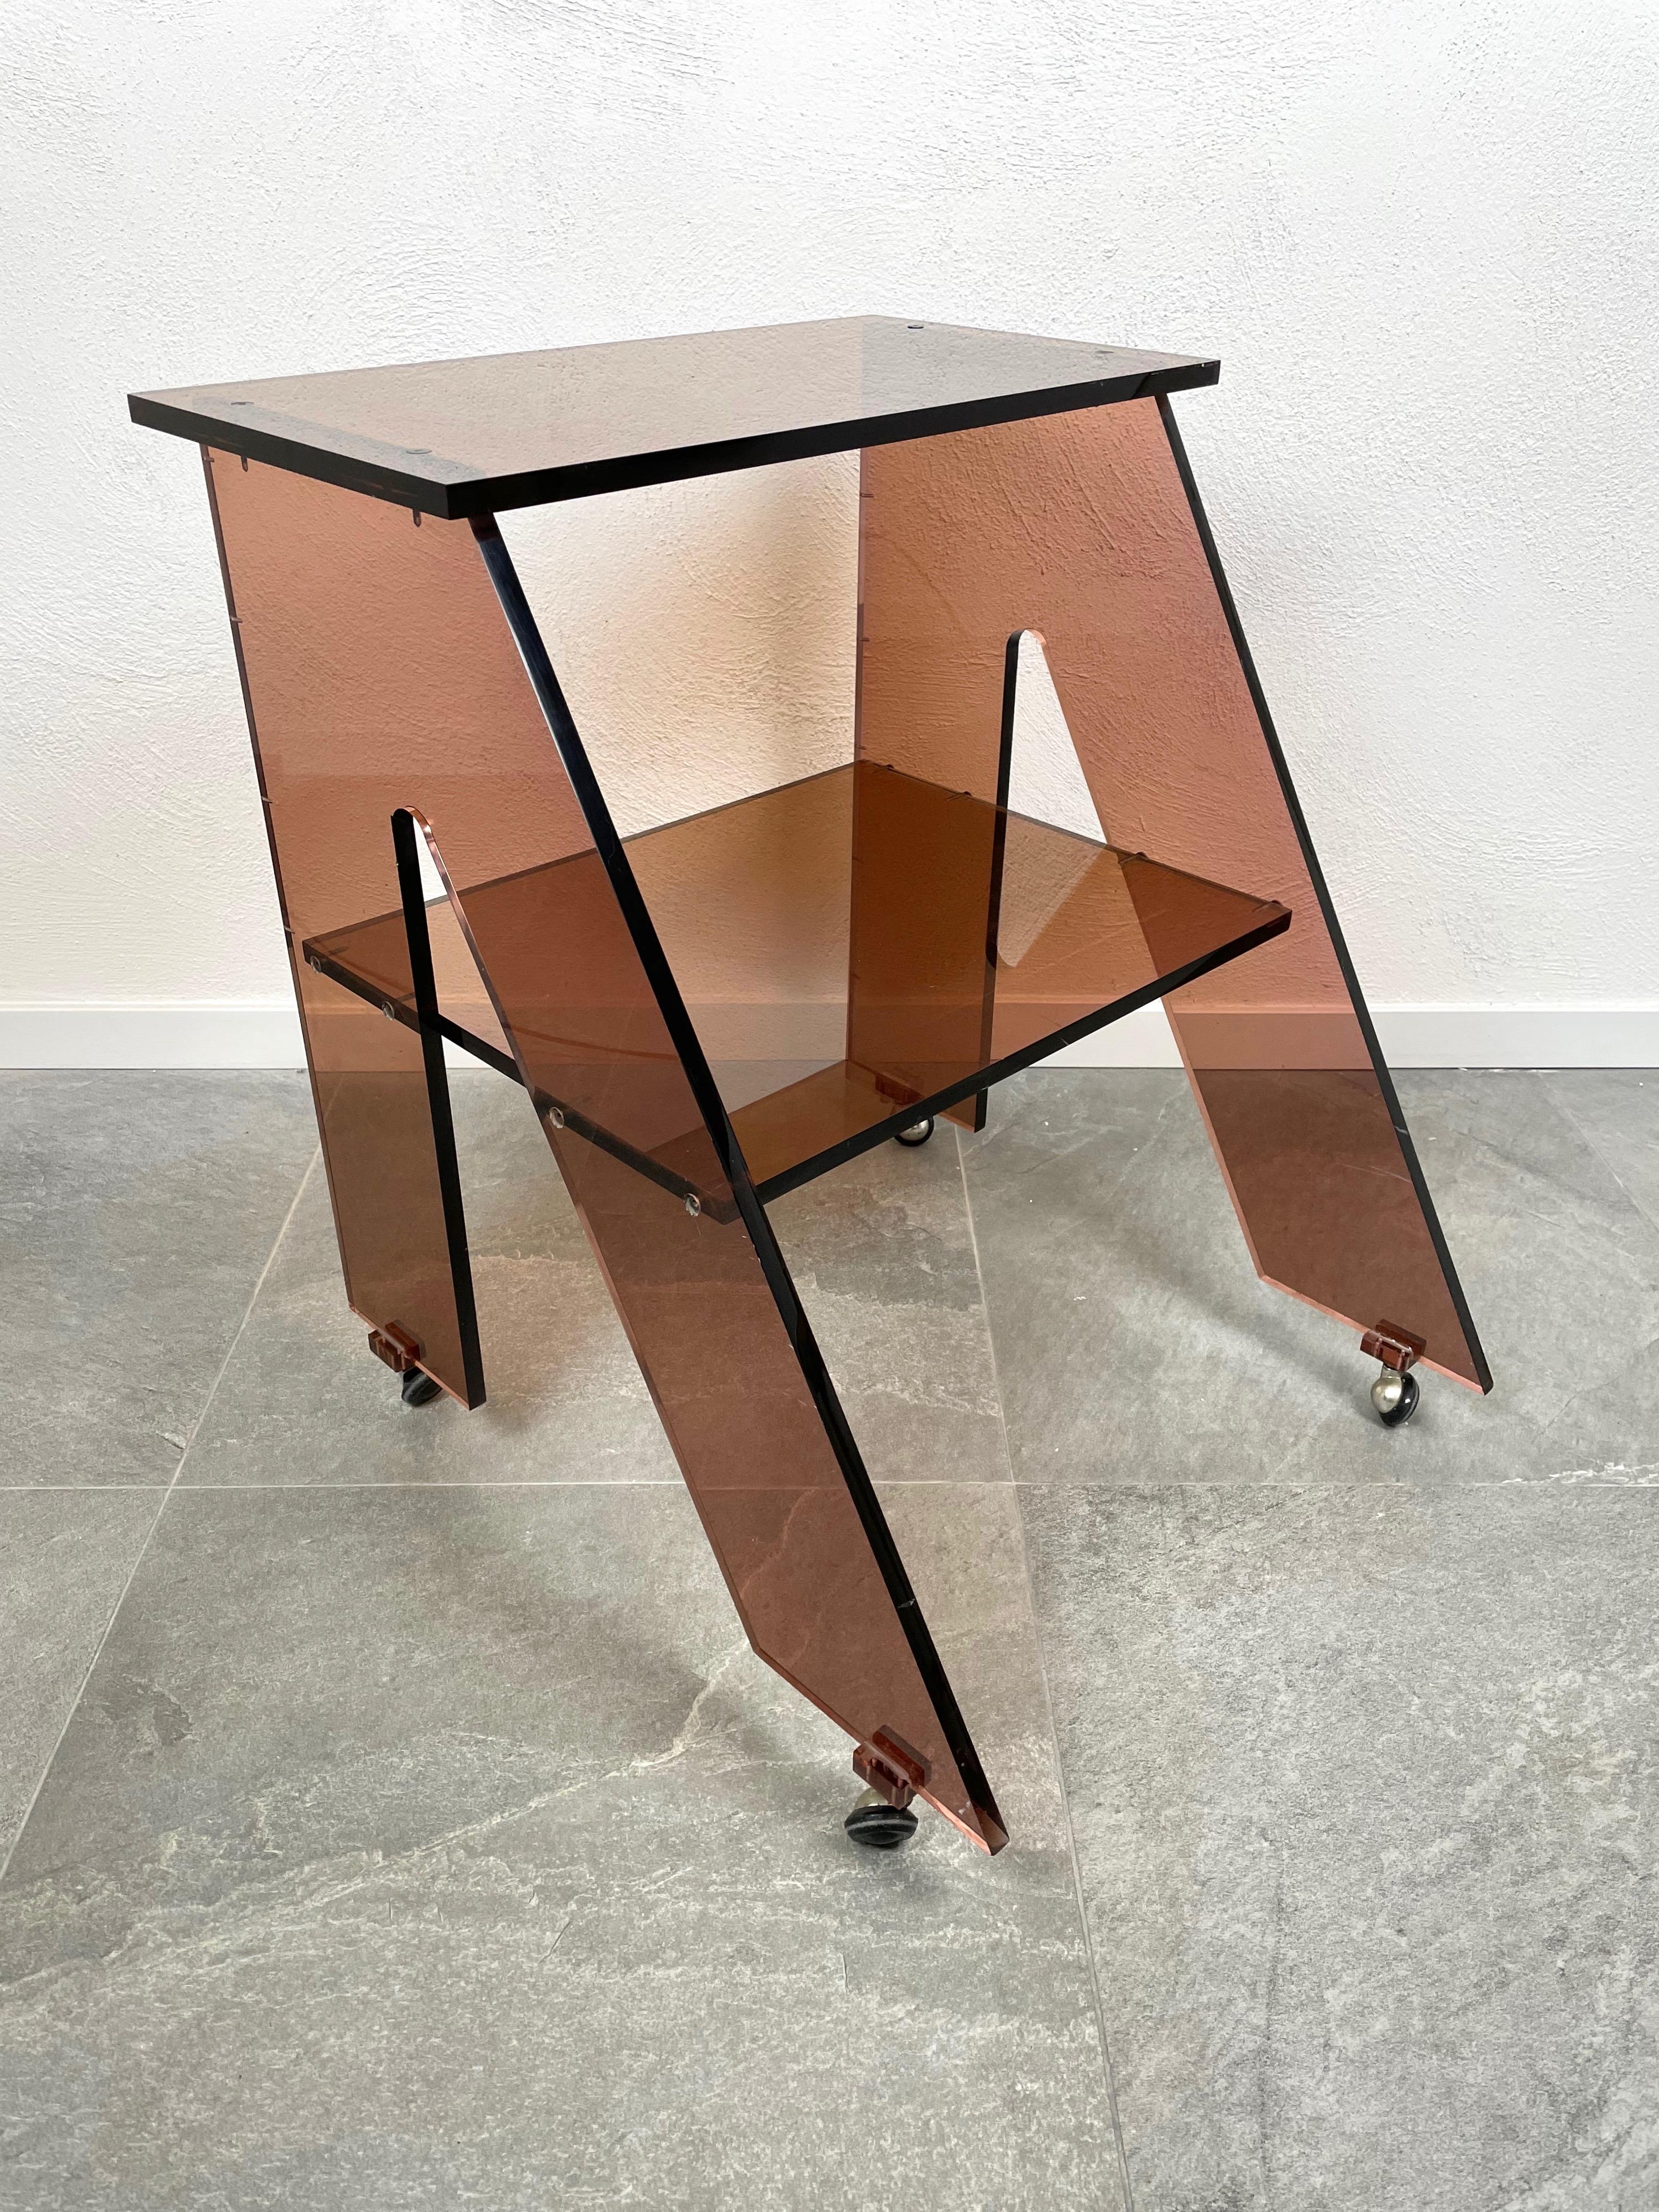 Table d'appoint en Lucite fumé conçue par Michel Dumas pour Roche Bobois. Fabriqué en France dans les années 1970.